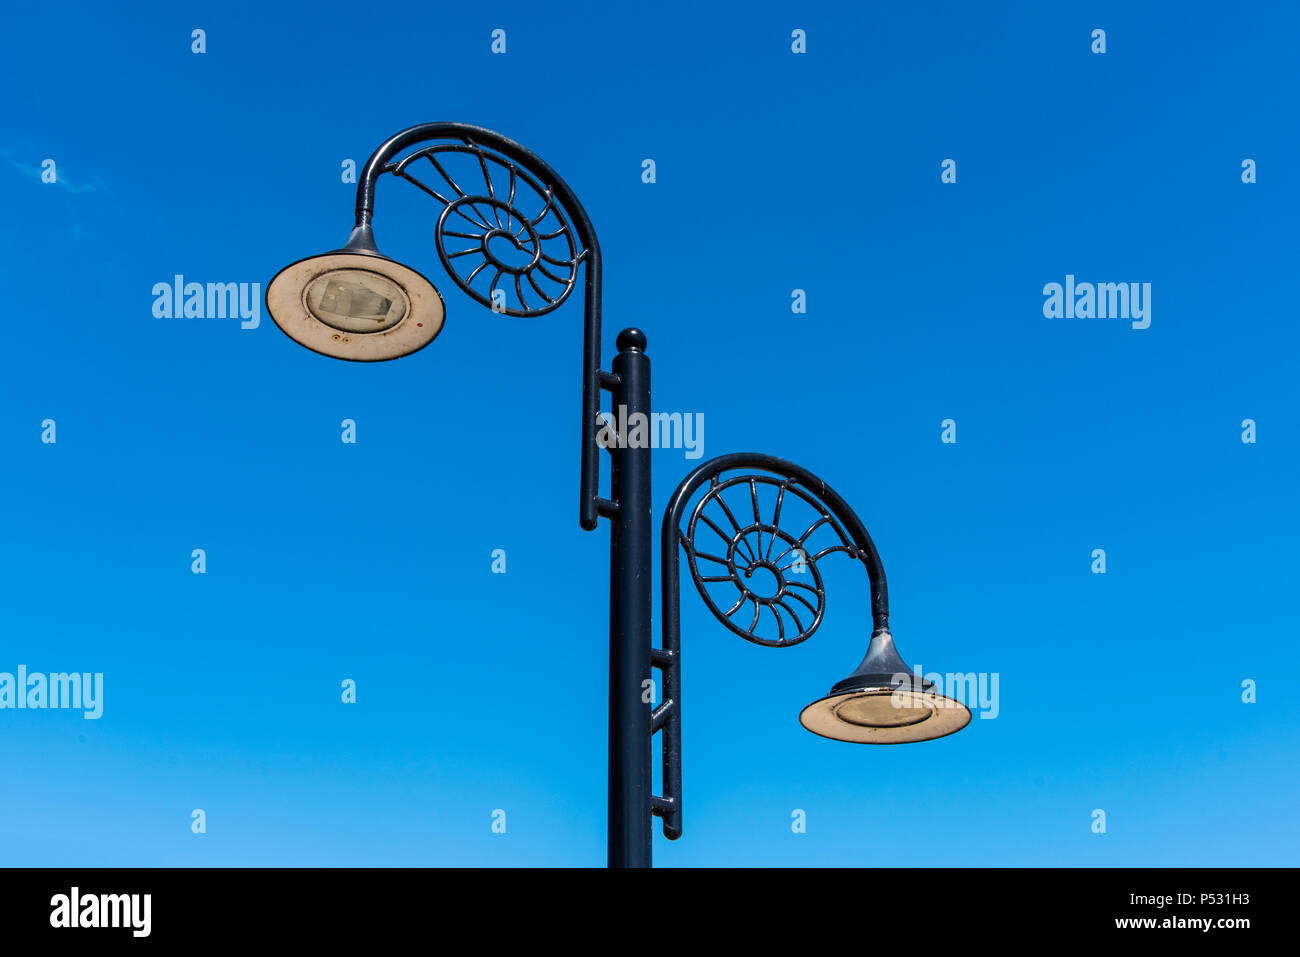 LYME REGIS, DORSET, Regno Unito, 14giu2018: Lampade sul lungomare di Lyme hanno un design ammonita per riconoscere la città la sua associazione con i fossili. Foto Stock